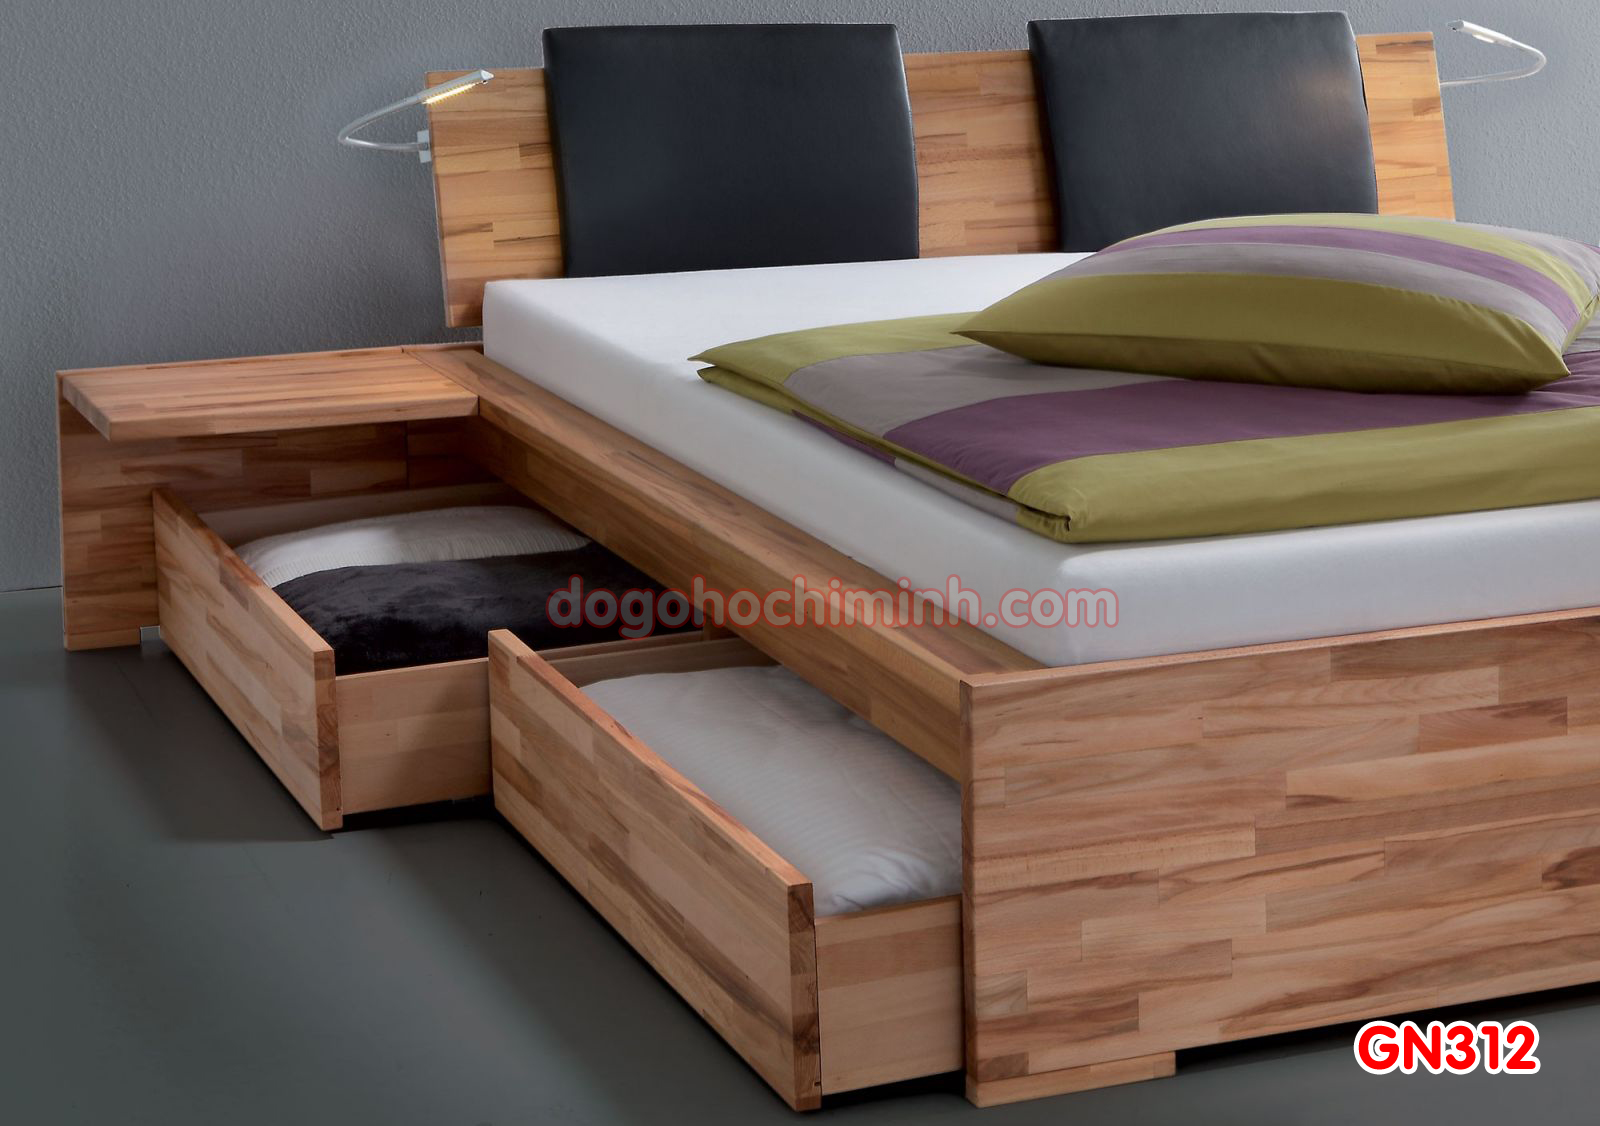 Giường ngủ gỗ đẹp cao cấp giá rẻ GN312